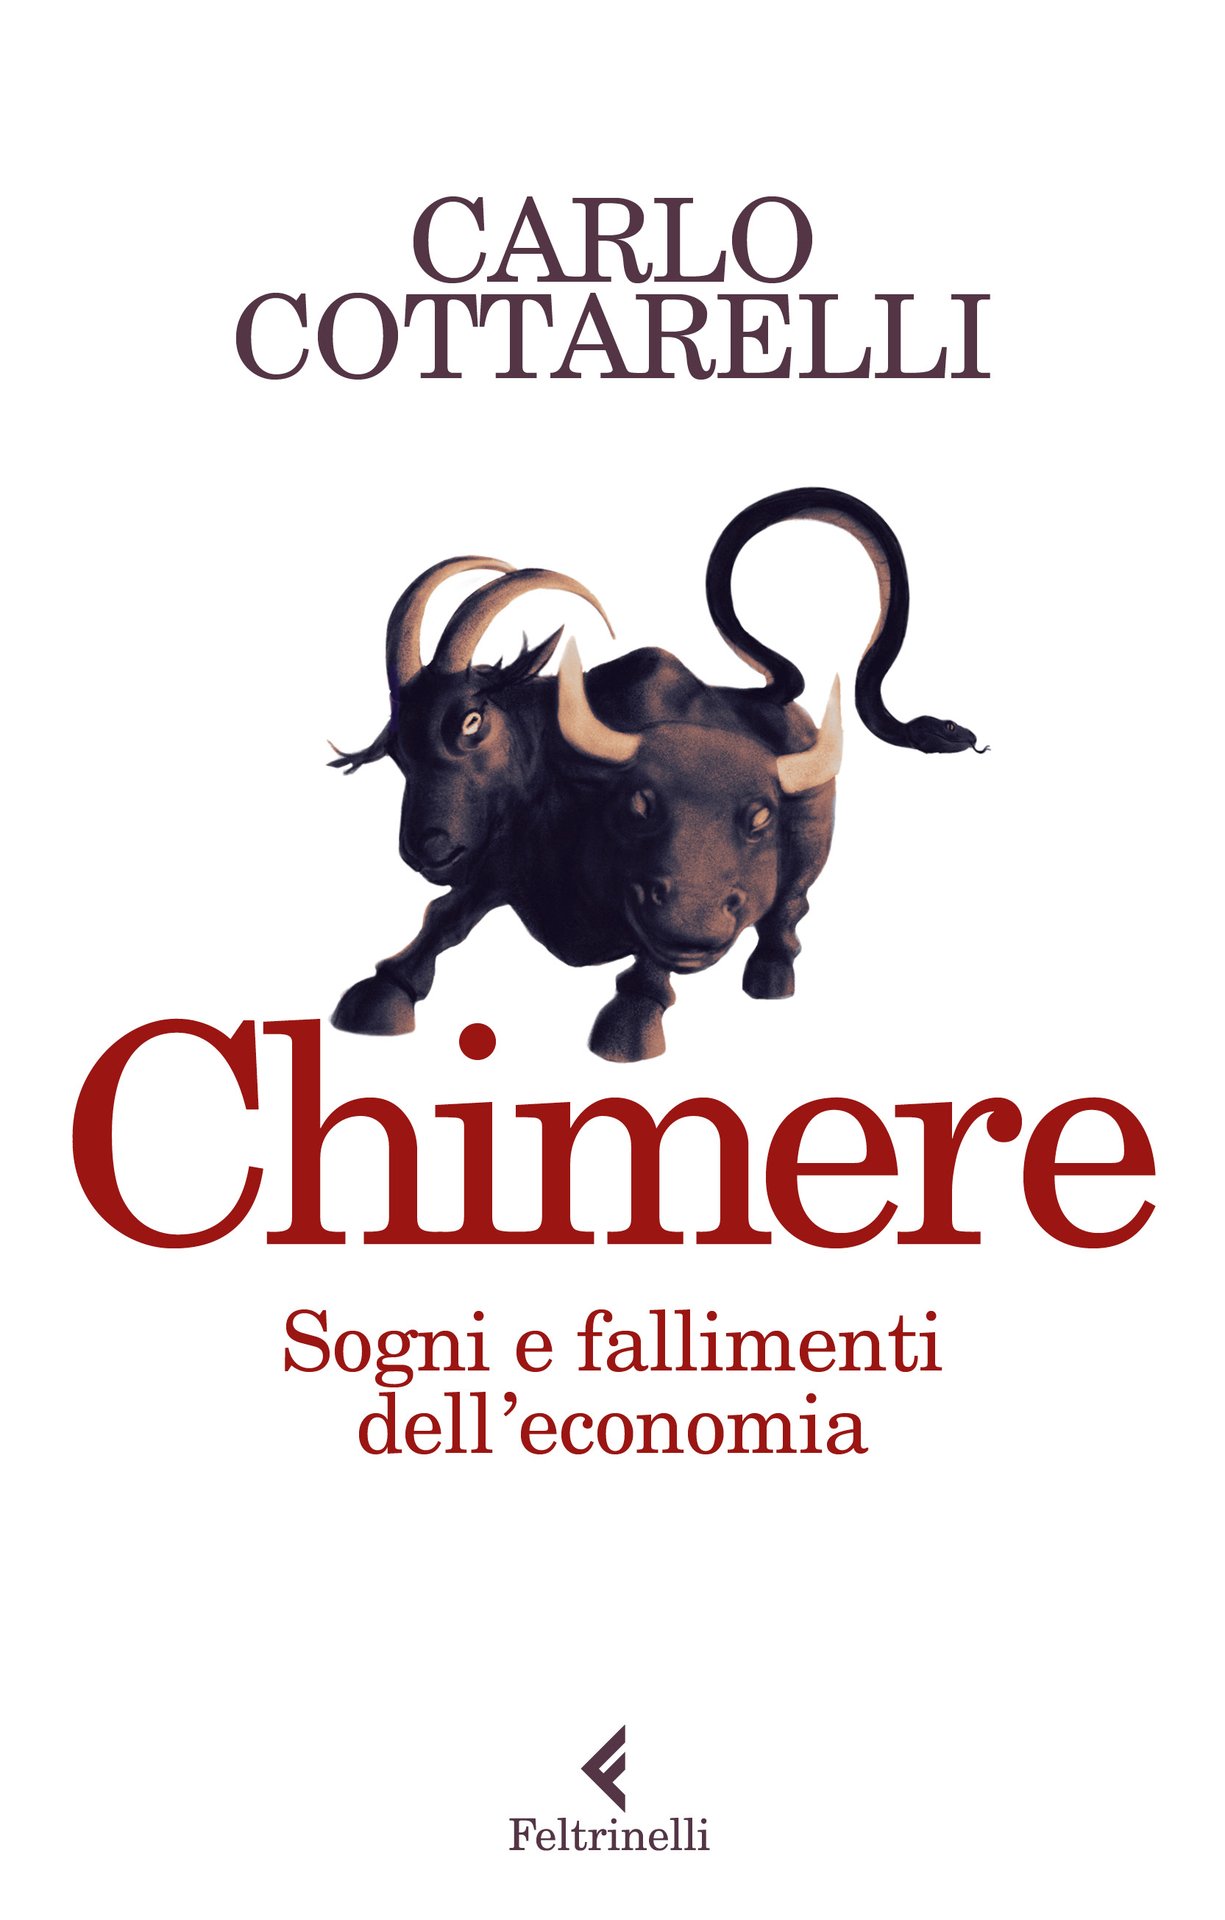 Carlo Cottarelli presenta "Chimere. Sogni e fallimenti dell'economia" a Porto Mantovano